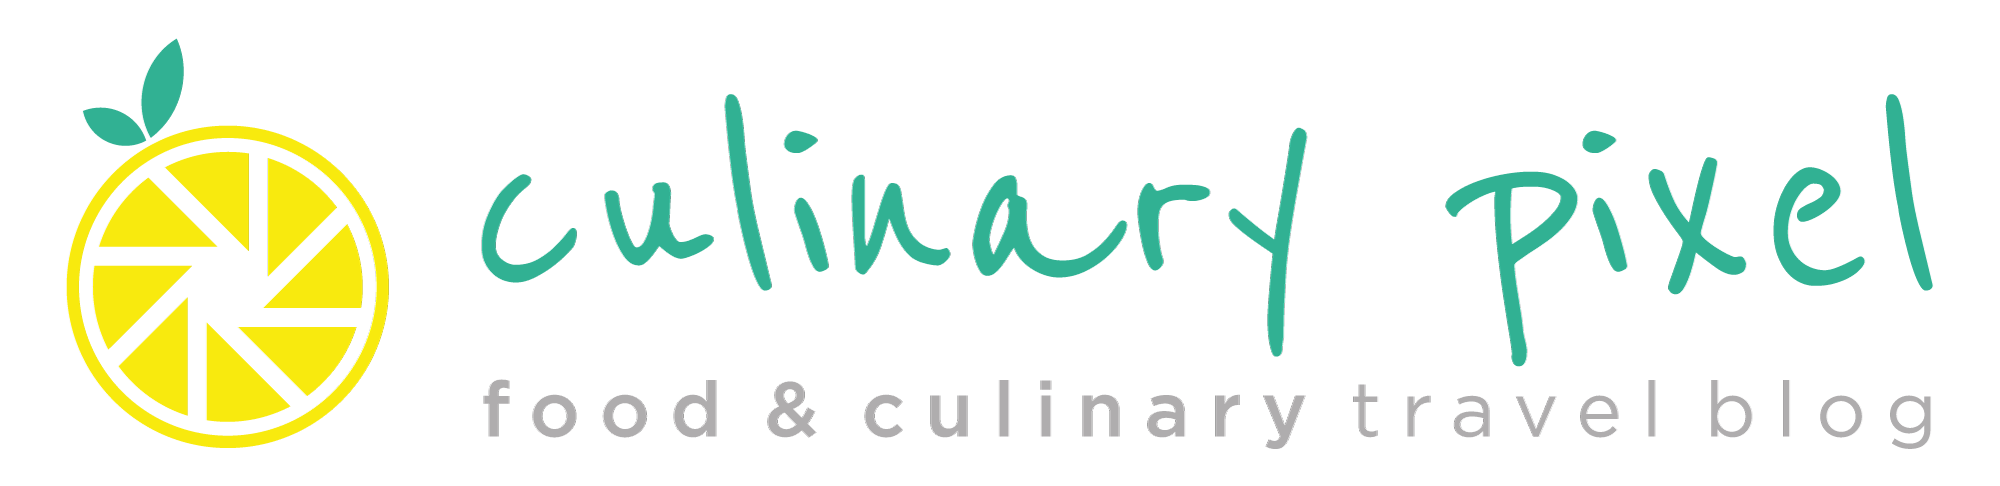 Das alte Logo von Culinary-Pixel. Culinary Pixel als Schrift, und links daneben das Bildlogo in Farbe, das eine Zitrone als Blende darstellt, darunter der Schriftzug food&culinary travel blog | corporate design